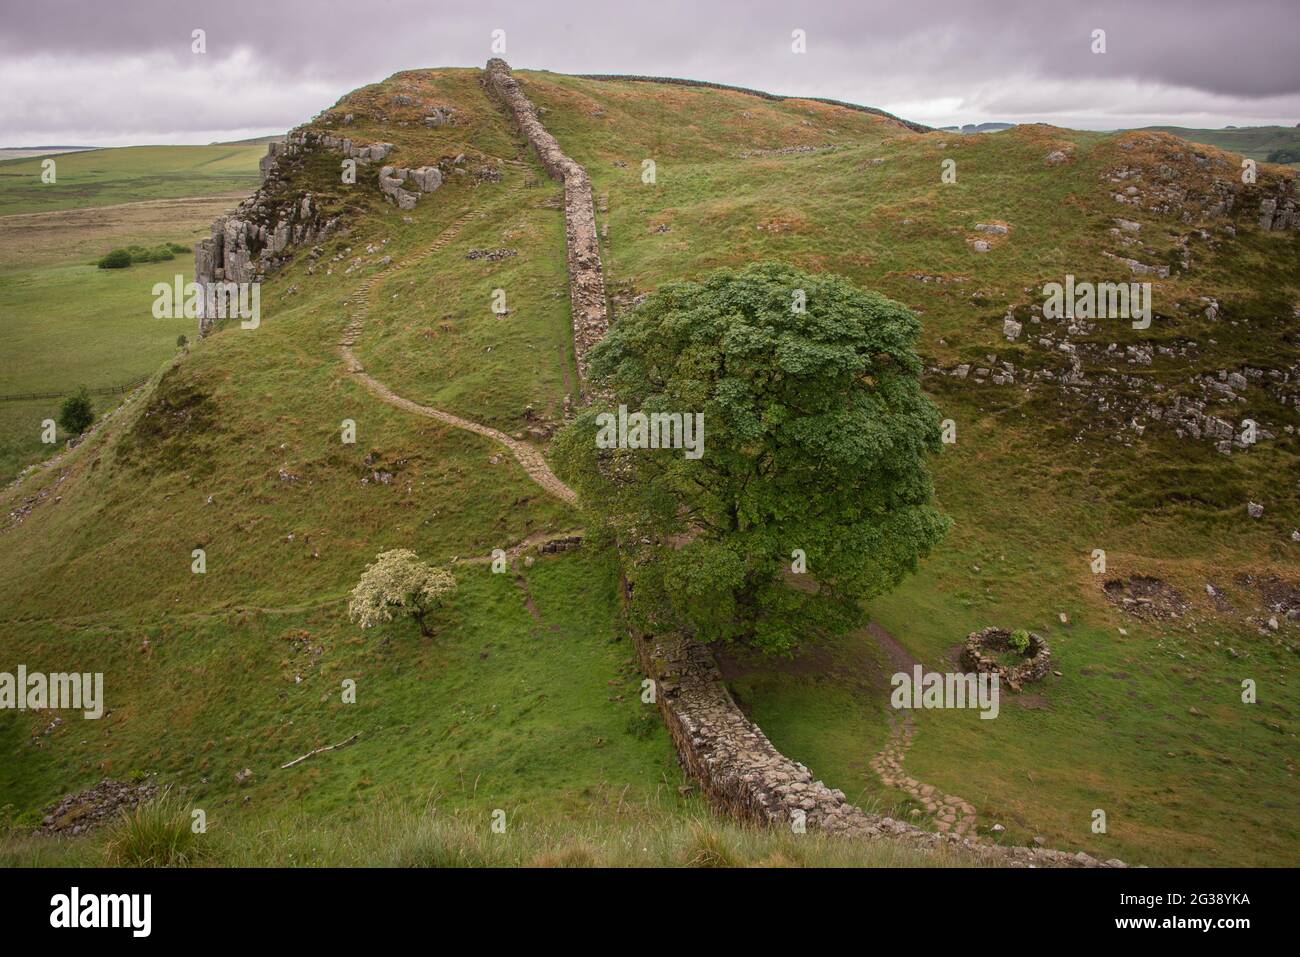 Vestiges du mur d'Hadrien, l'ancien mur-frontière romain traversant le nord de l'Angleterre, alors qu'ils descendent les collines jusqu'au célèbre point pittoresque de Sycamore Gap à l'ouest du fort romain Housesteads. Longeant l'ensemble du site classé au patrimoine mondial de l'UNESCO, le chemin du mur d'Hadrien est l'un des sentiers de randonnée les plus populaires d'Angleterre. Le célèbre arbre a été abattu dans un acte de vandalisme en 2023. Banque D'Images